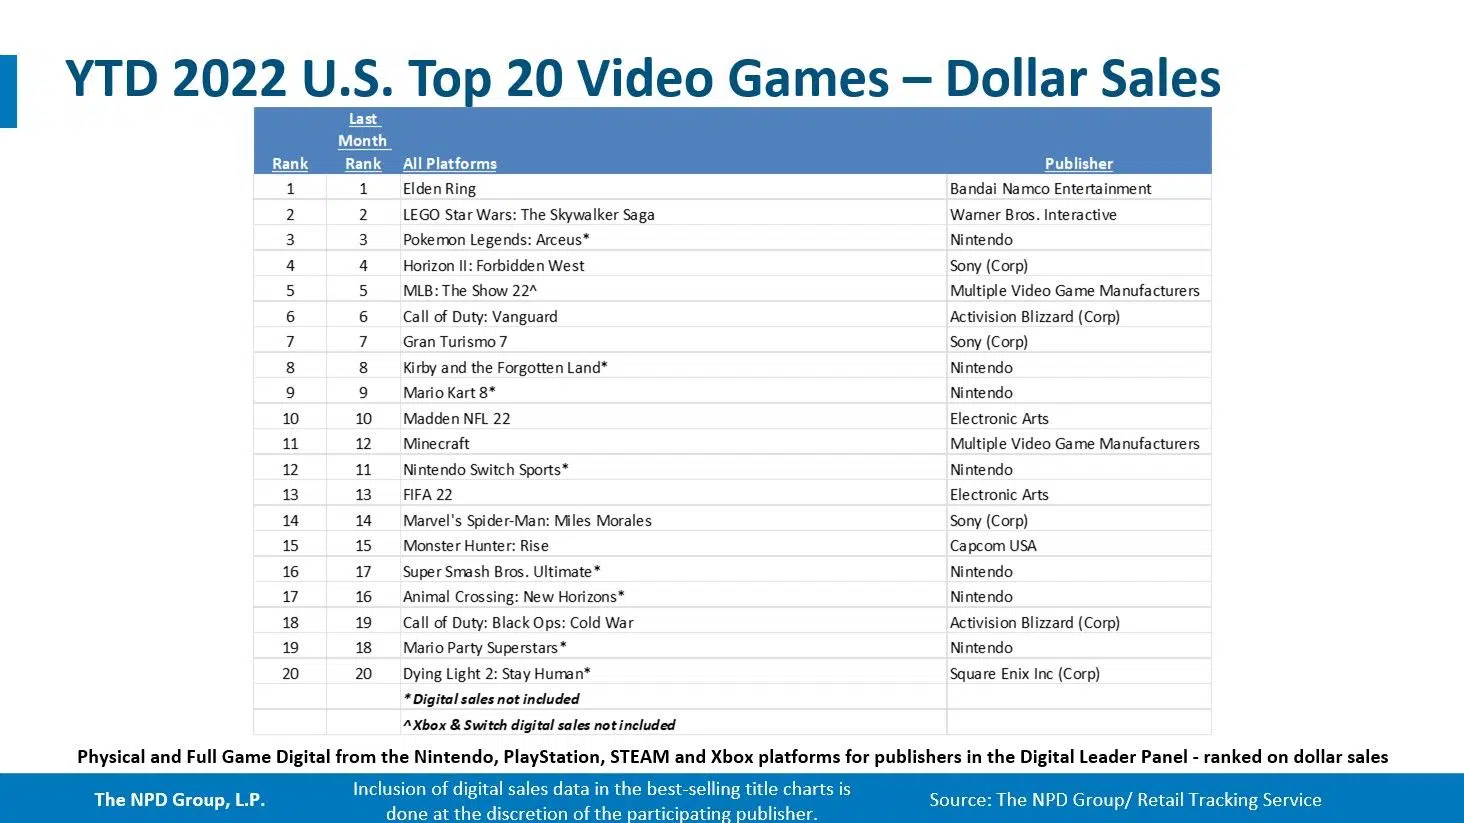 jogos mais vendidos do ano para ps5, ps4 e outras plataformas